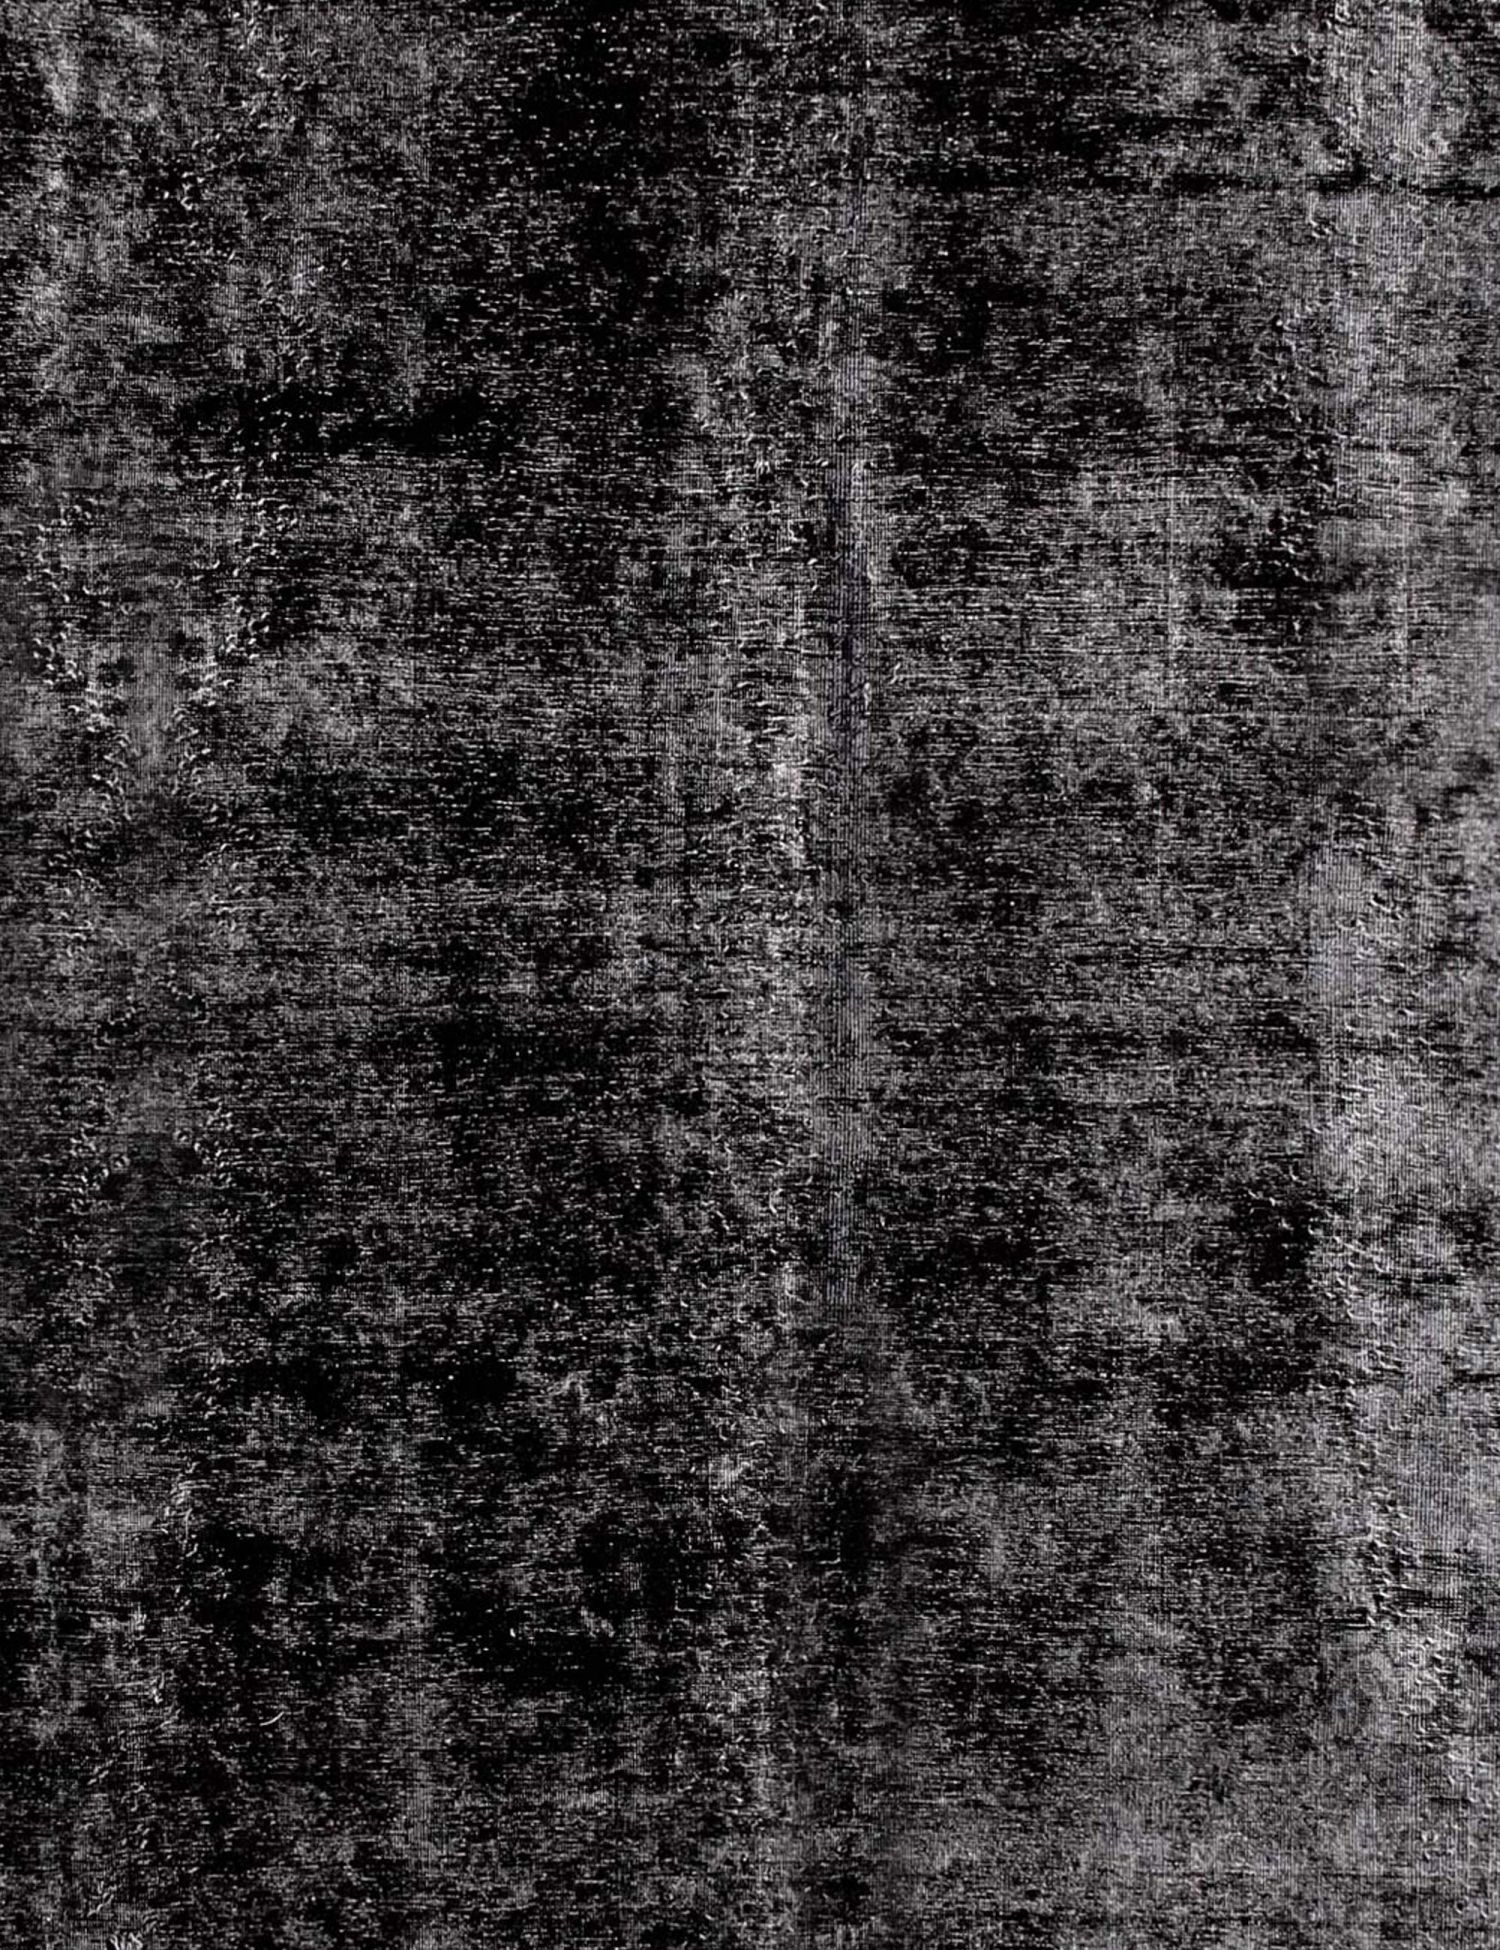 Persischer Vintage Teppich  schwarz <br/>293 x 293 cm